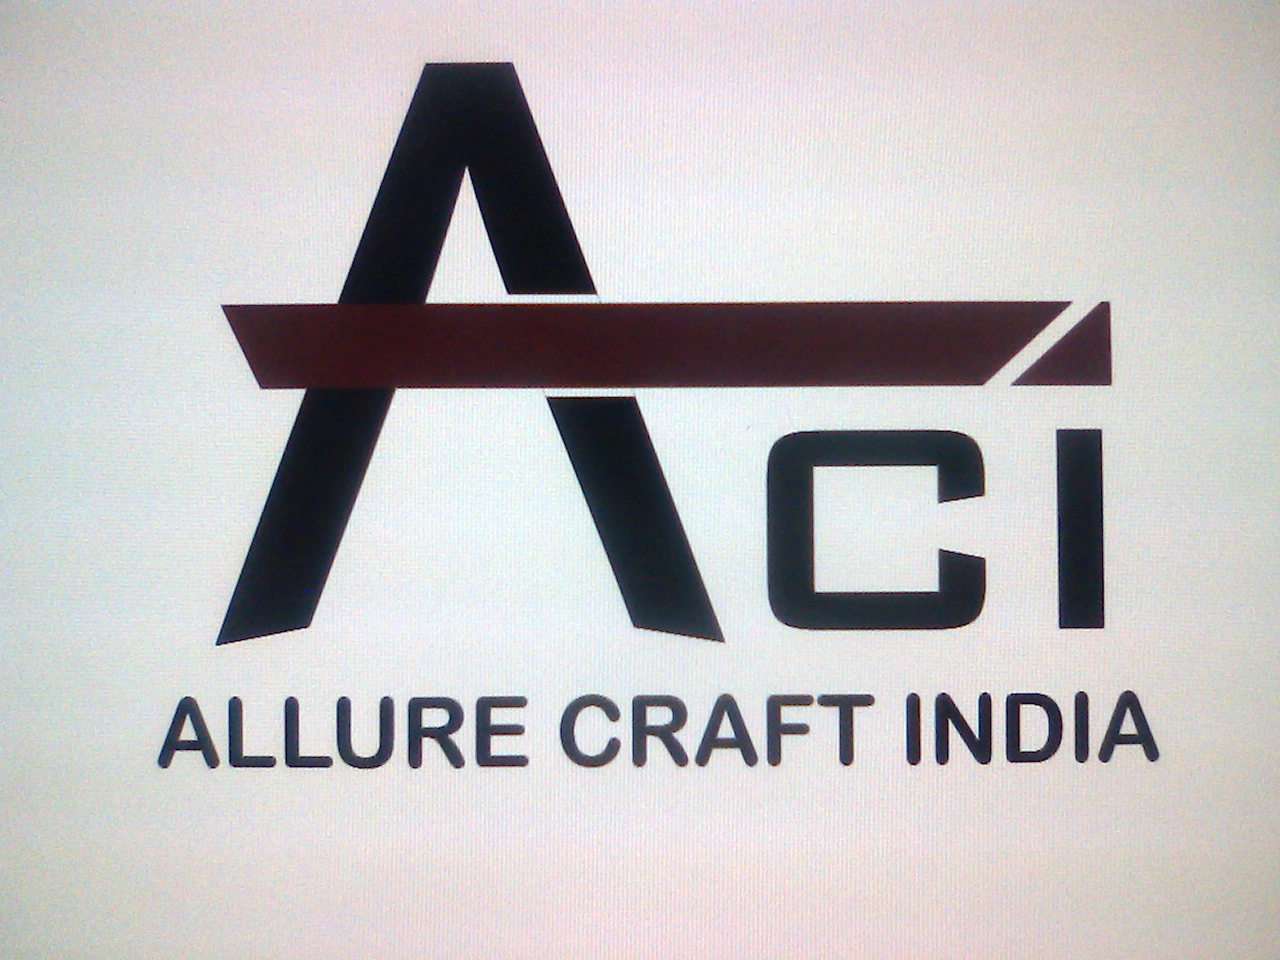 Allure Craft India